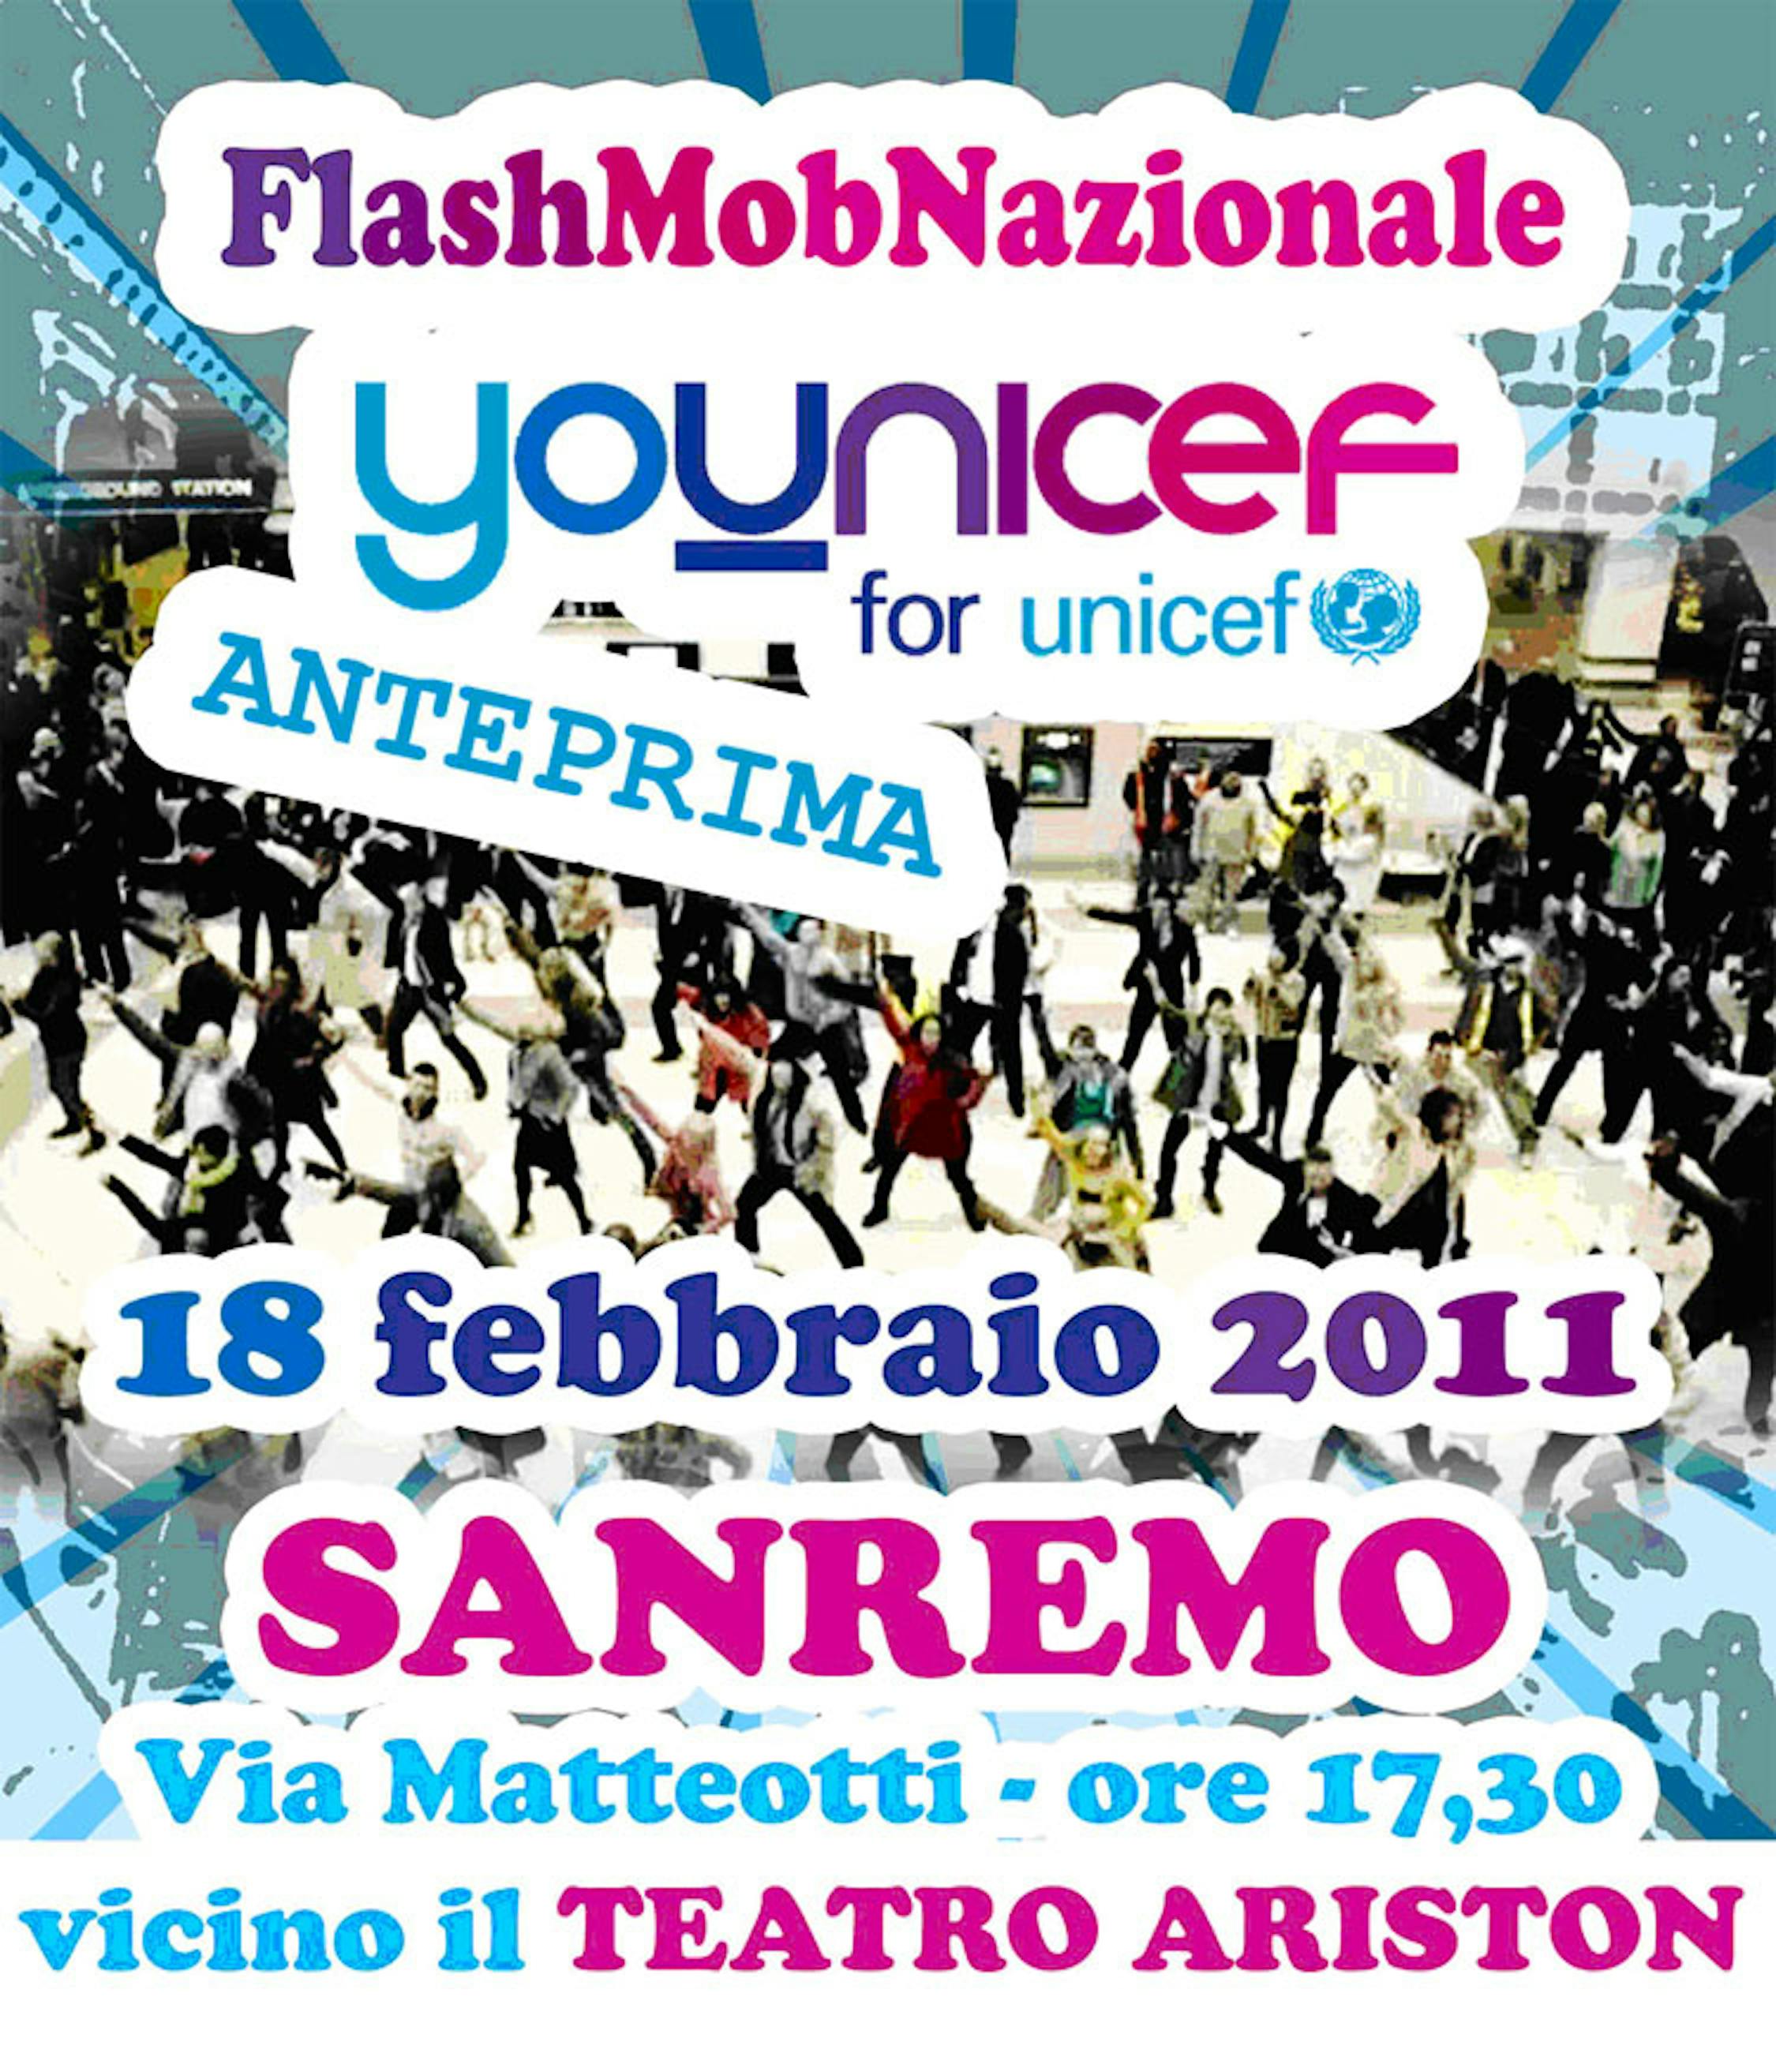 La locandina del Flash mob Younicef a Sanremo 2011